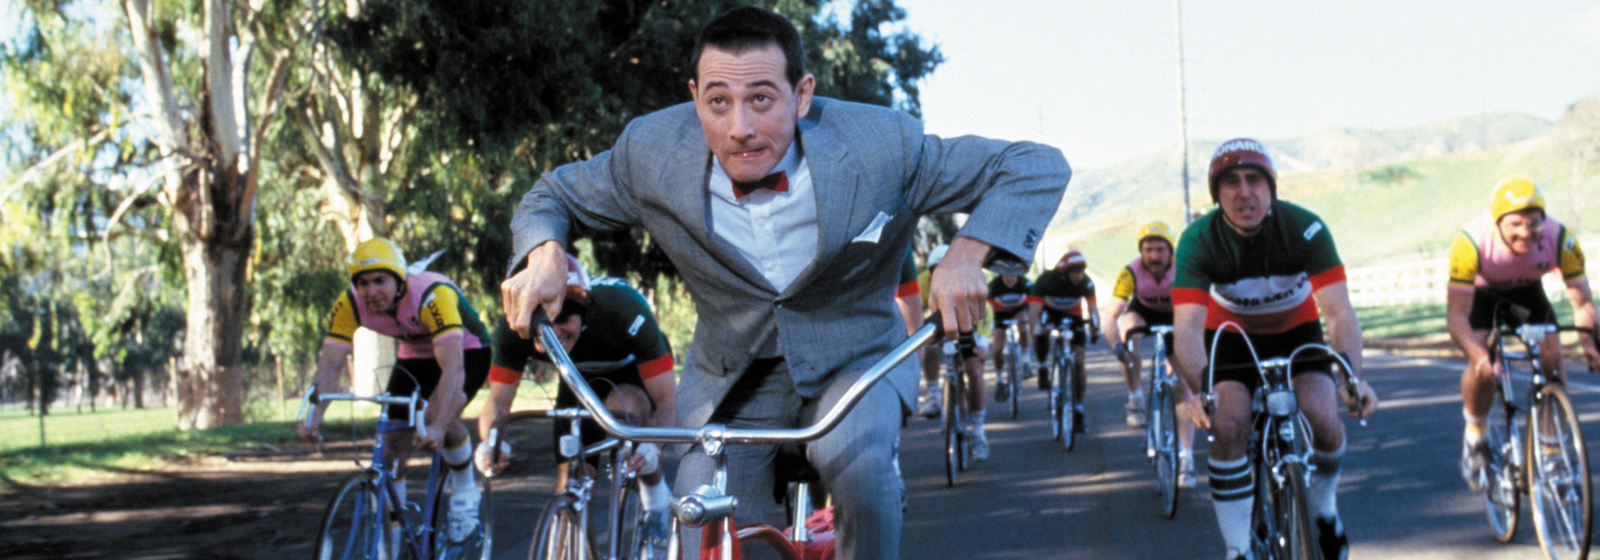 Paul Reubens as Pee-Wee Herman joins a cycle road race in Pee-Wee's Big Adventure